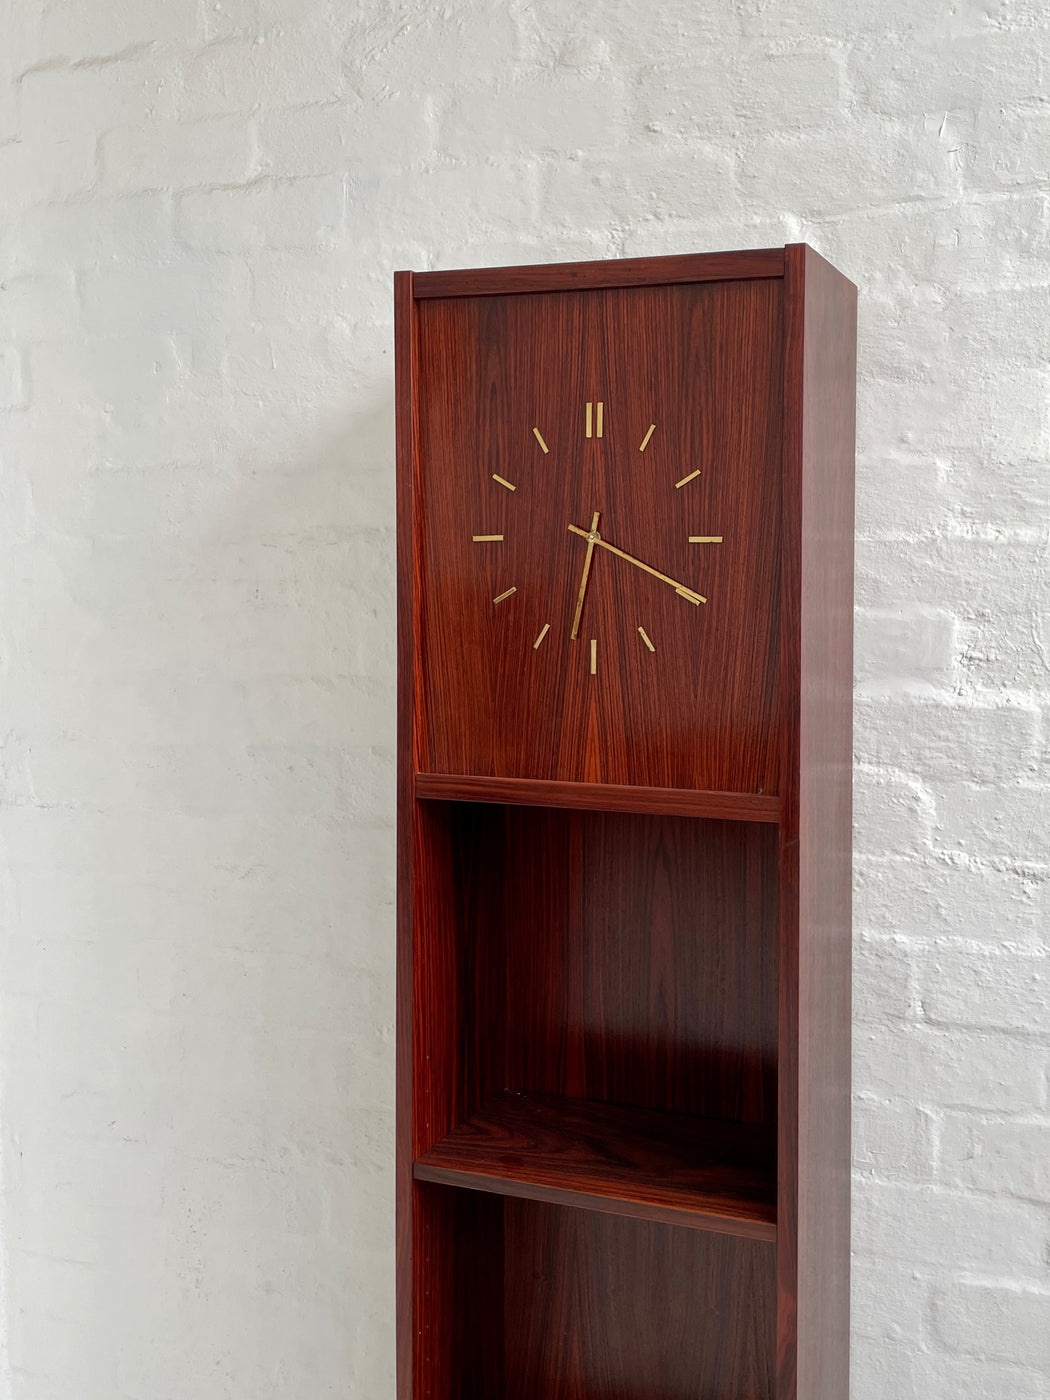 Danish Rosewood Standing Clock